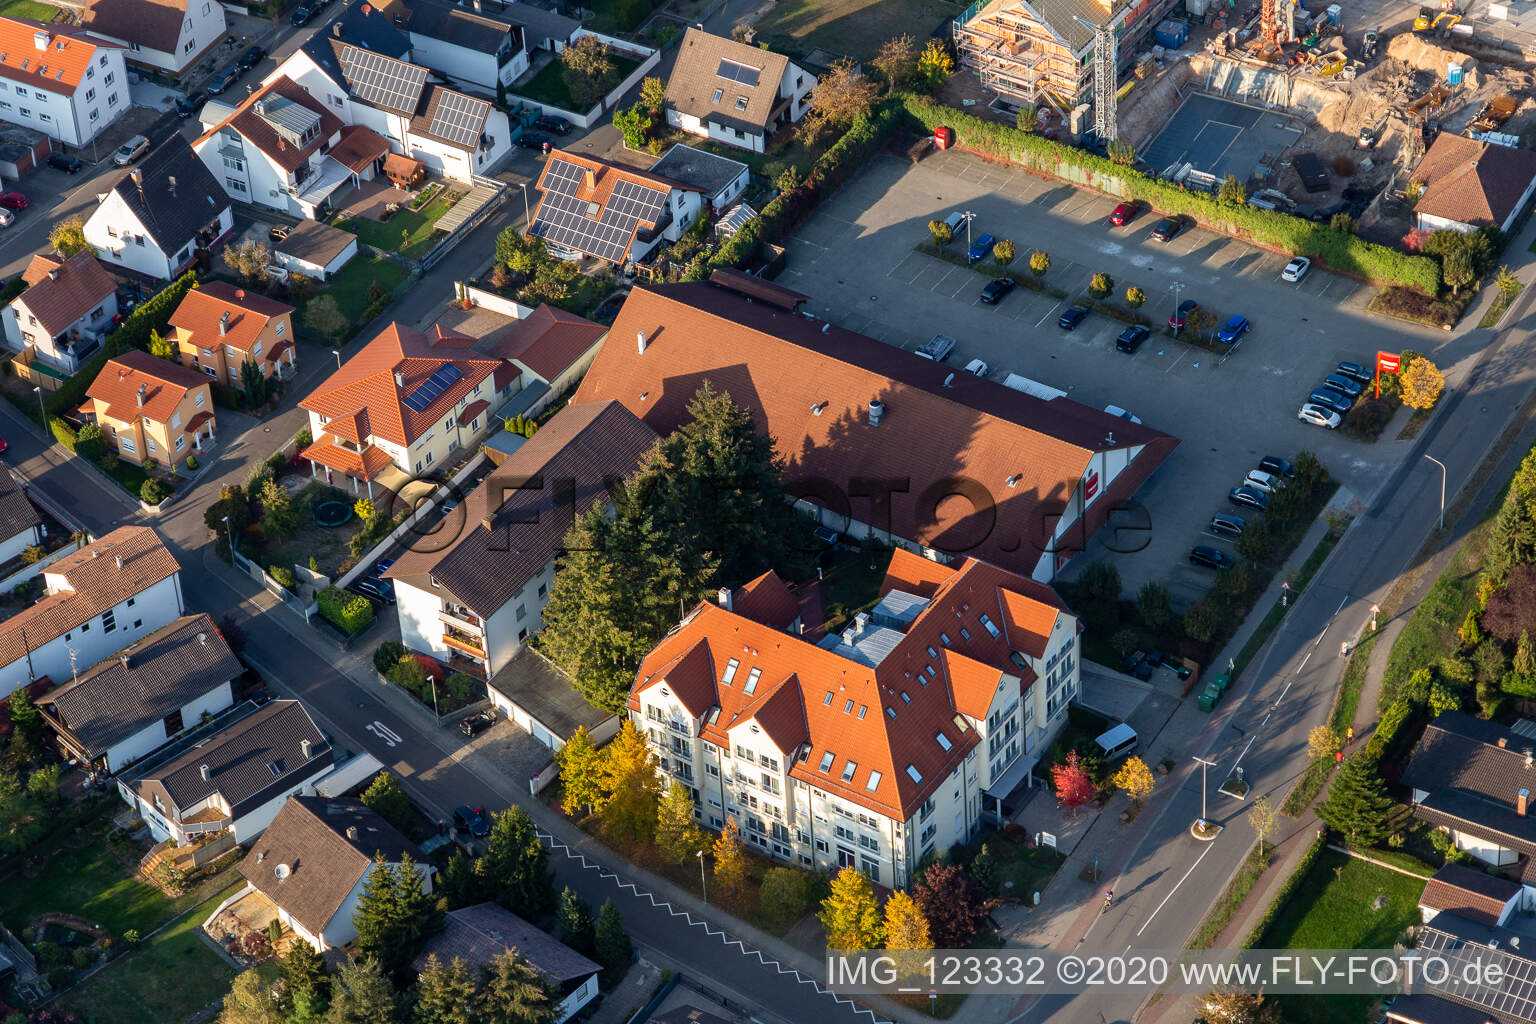 Vue aérienne de Maison de retraite AWO "Lina Somme à Jockgrim dans le département Rhénanie-Palatinat, Allemagne